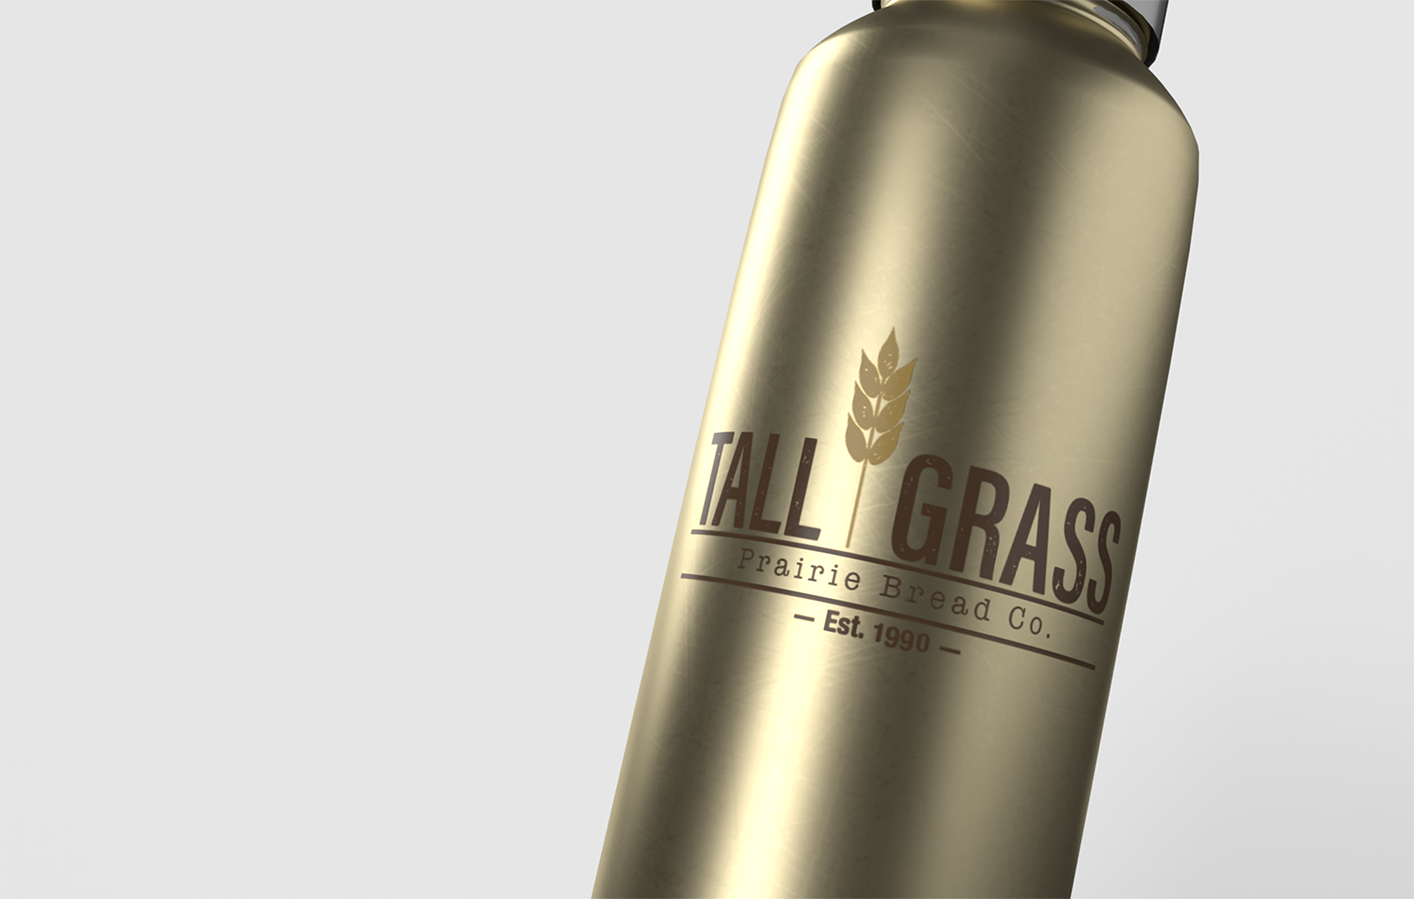 Tall Grass Logo Closeup